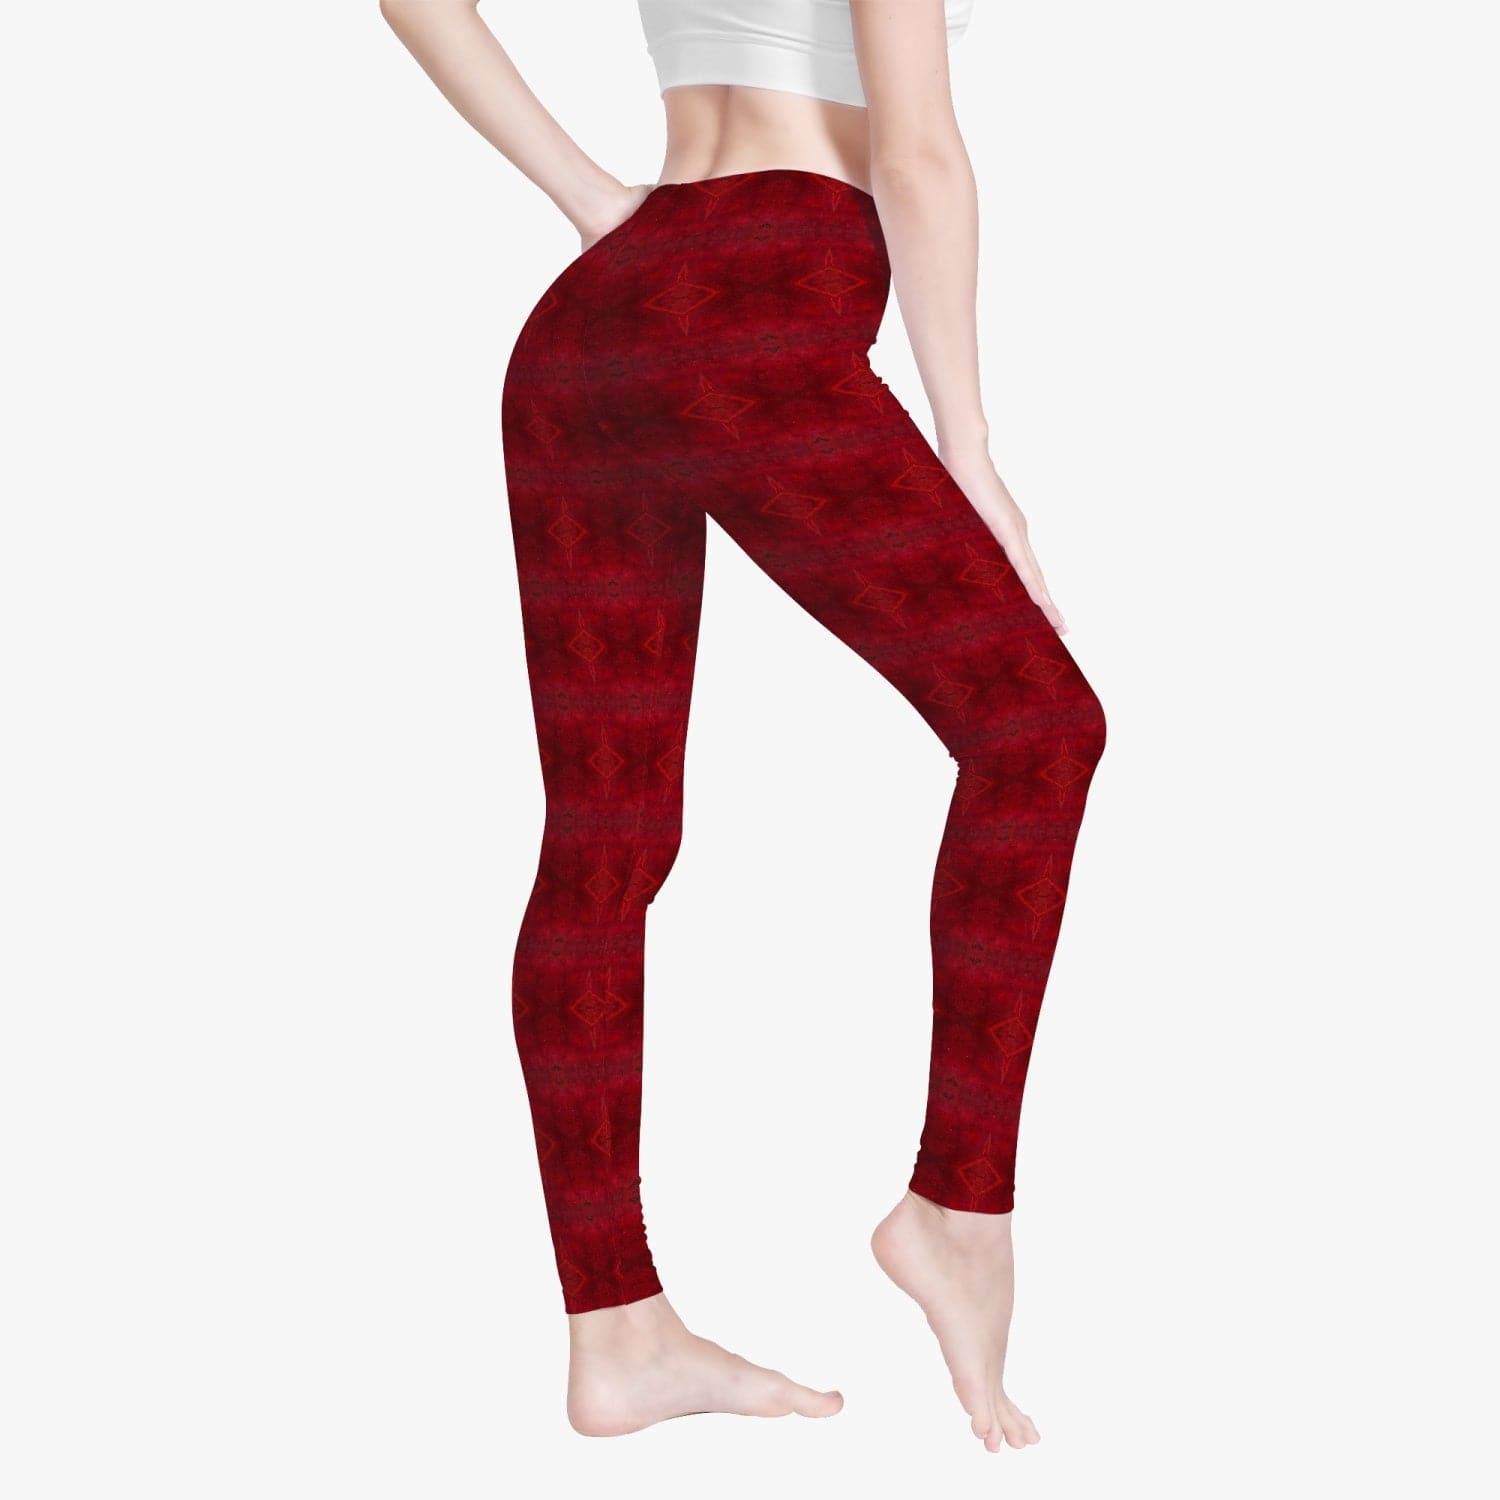 Dark Red Patterned Skinny Fit Yoga Pants/Leggings for Women, by Sensus Studio Design